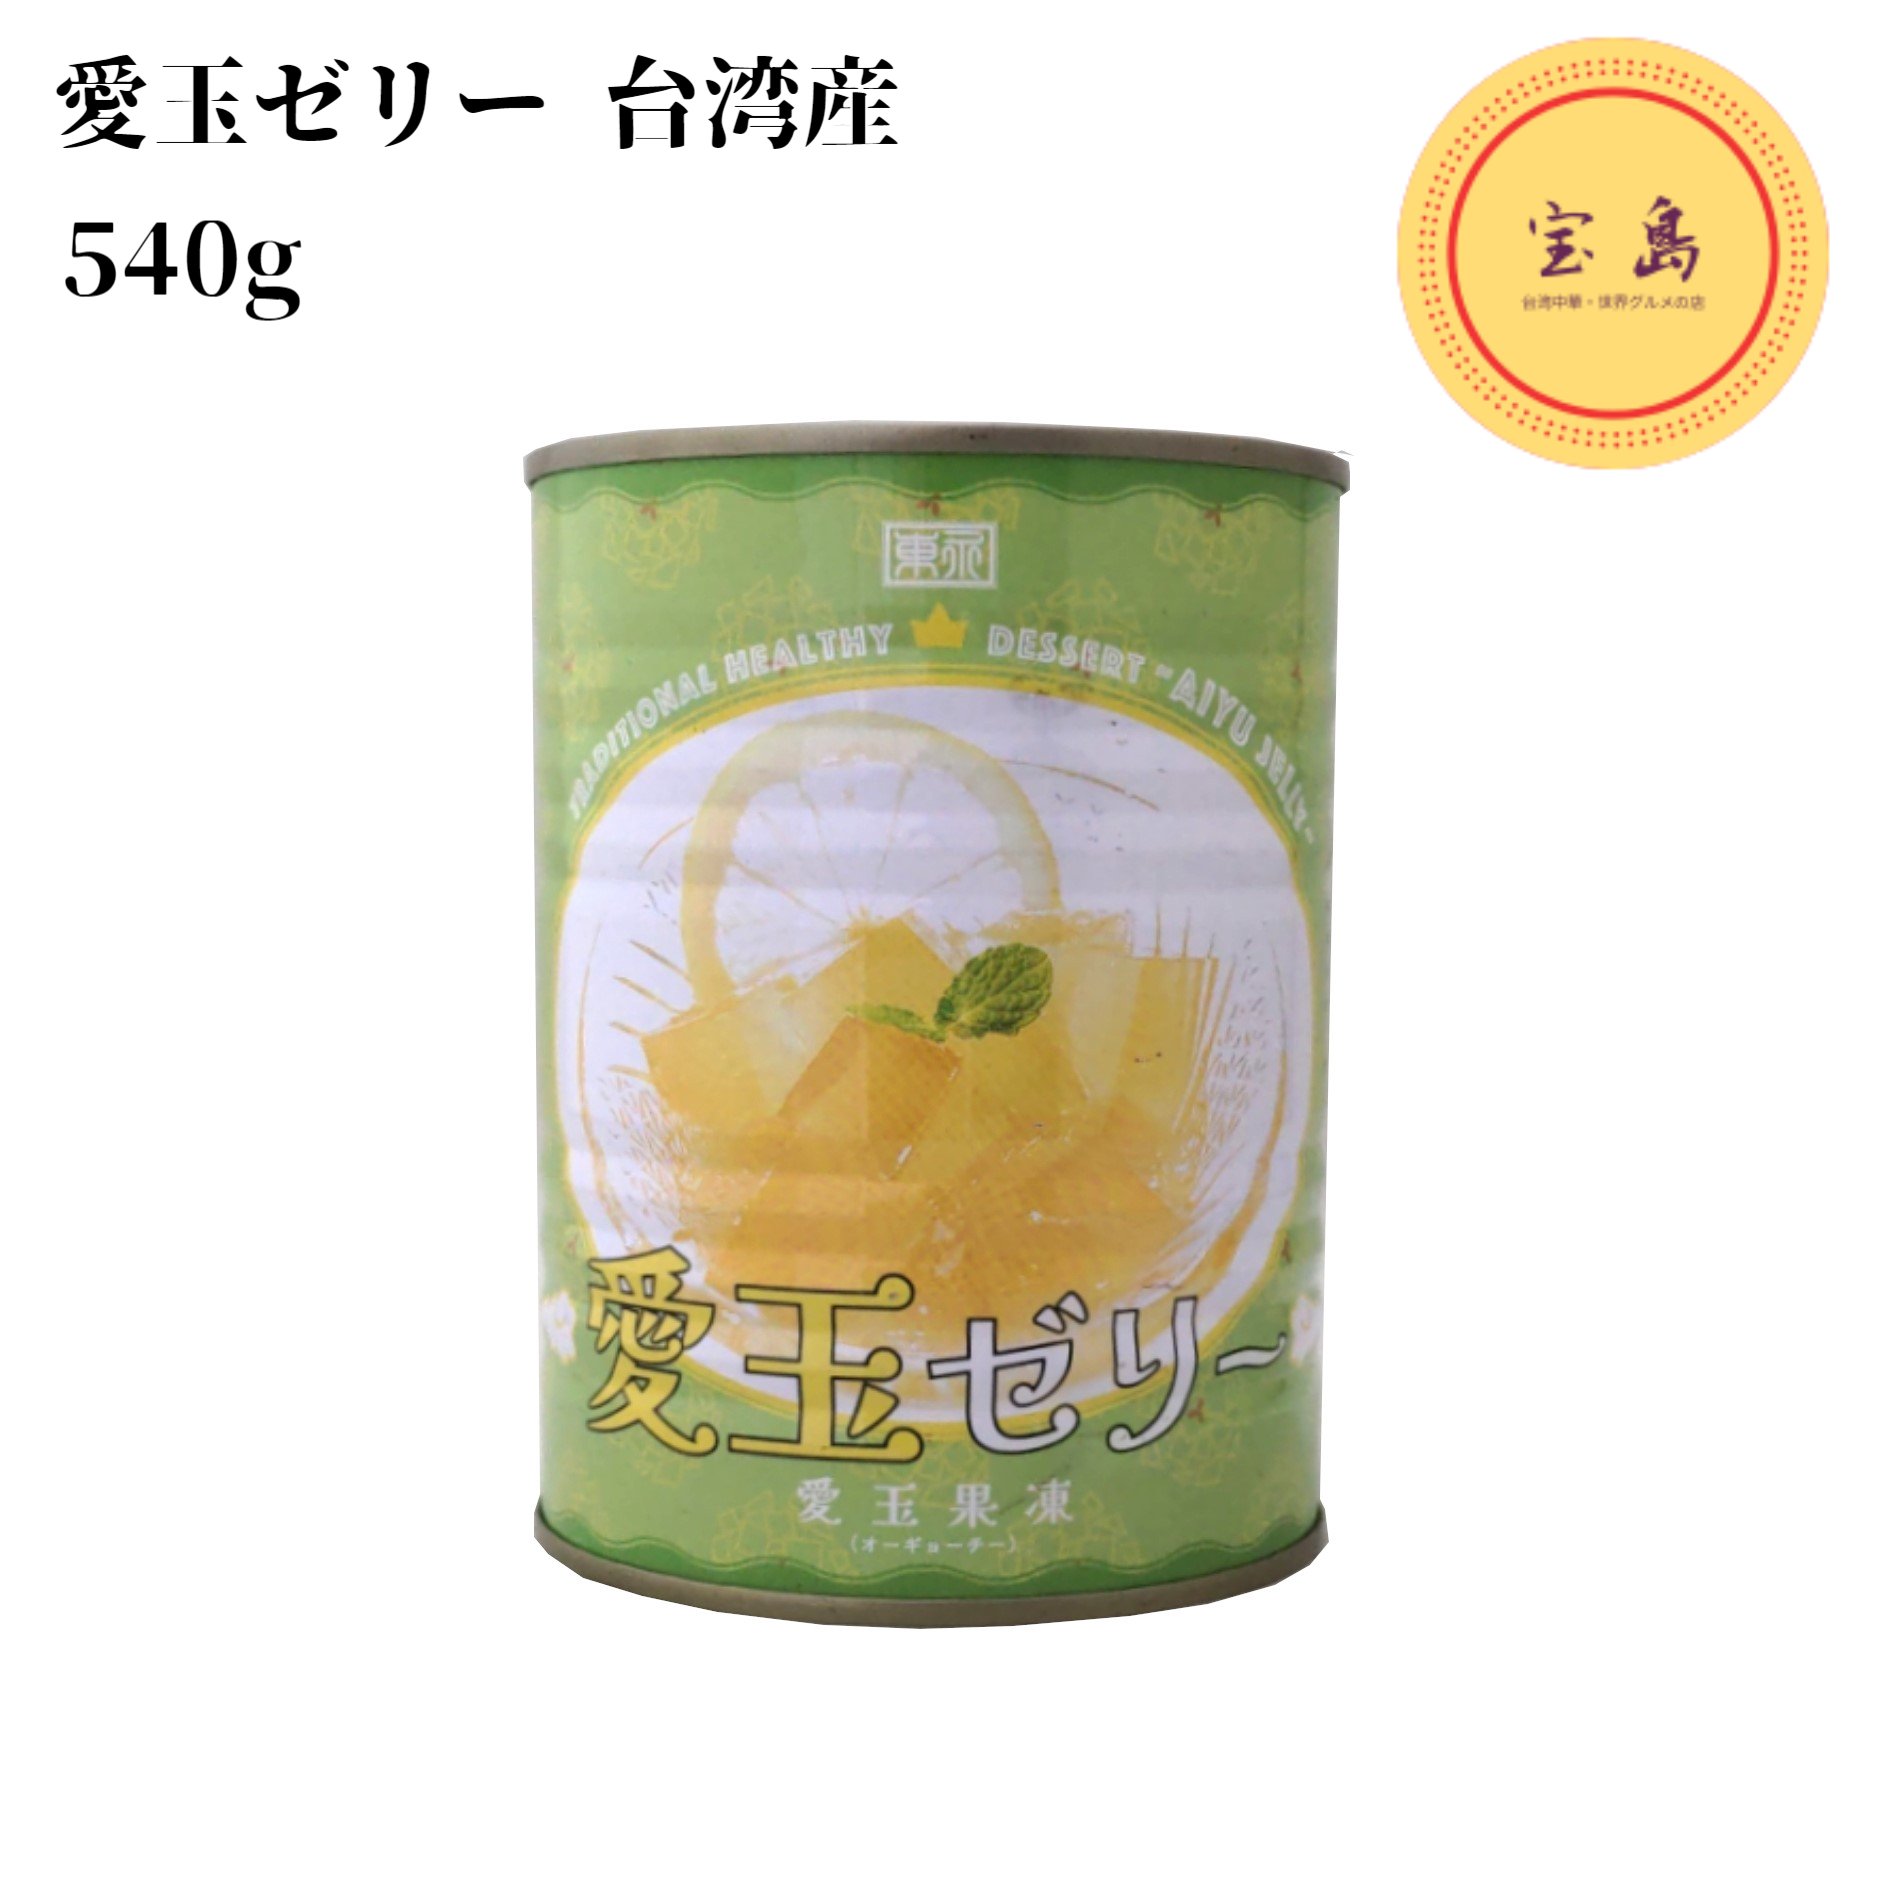 楽天市場】金莱香 愛玉果凍 愛玉ゼリー オーギョーチ 540g 缶詰 台湾産 